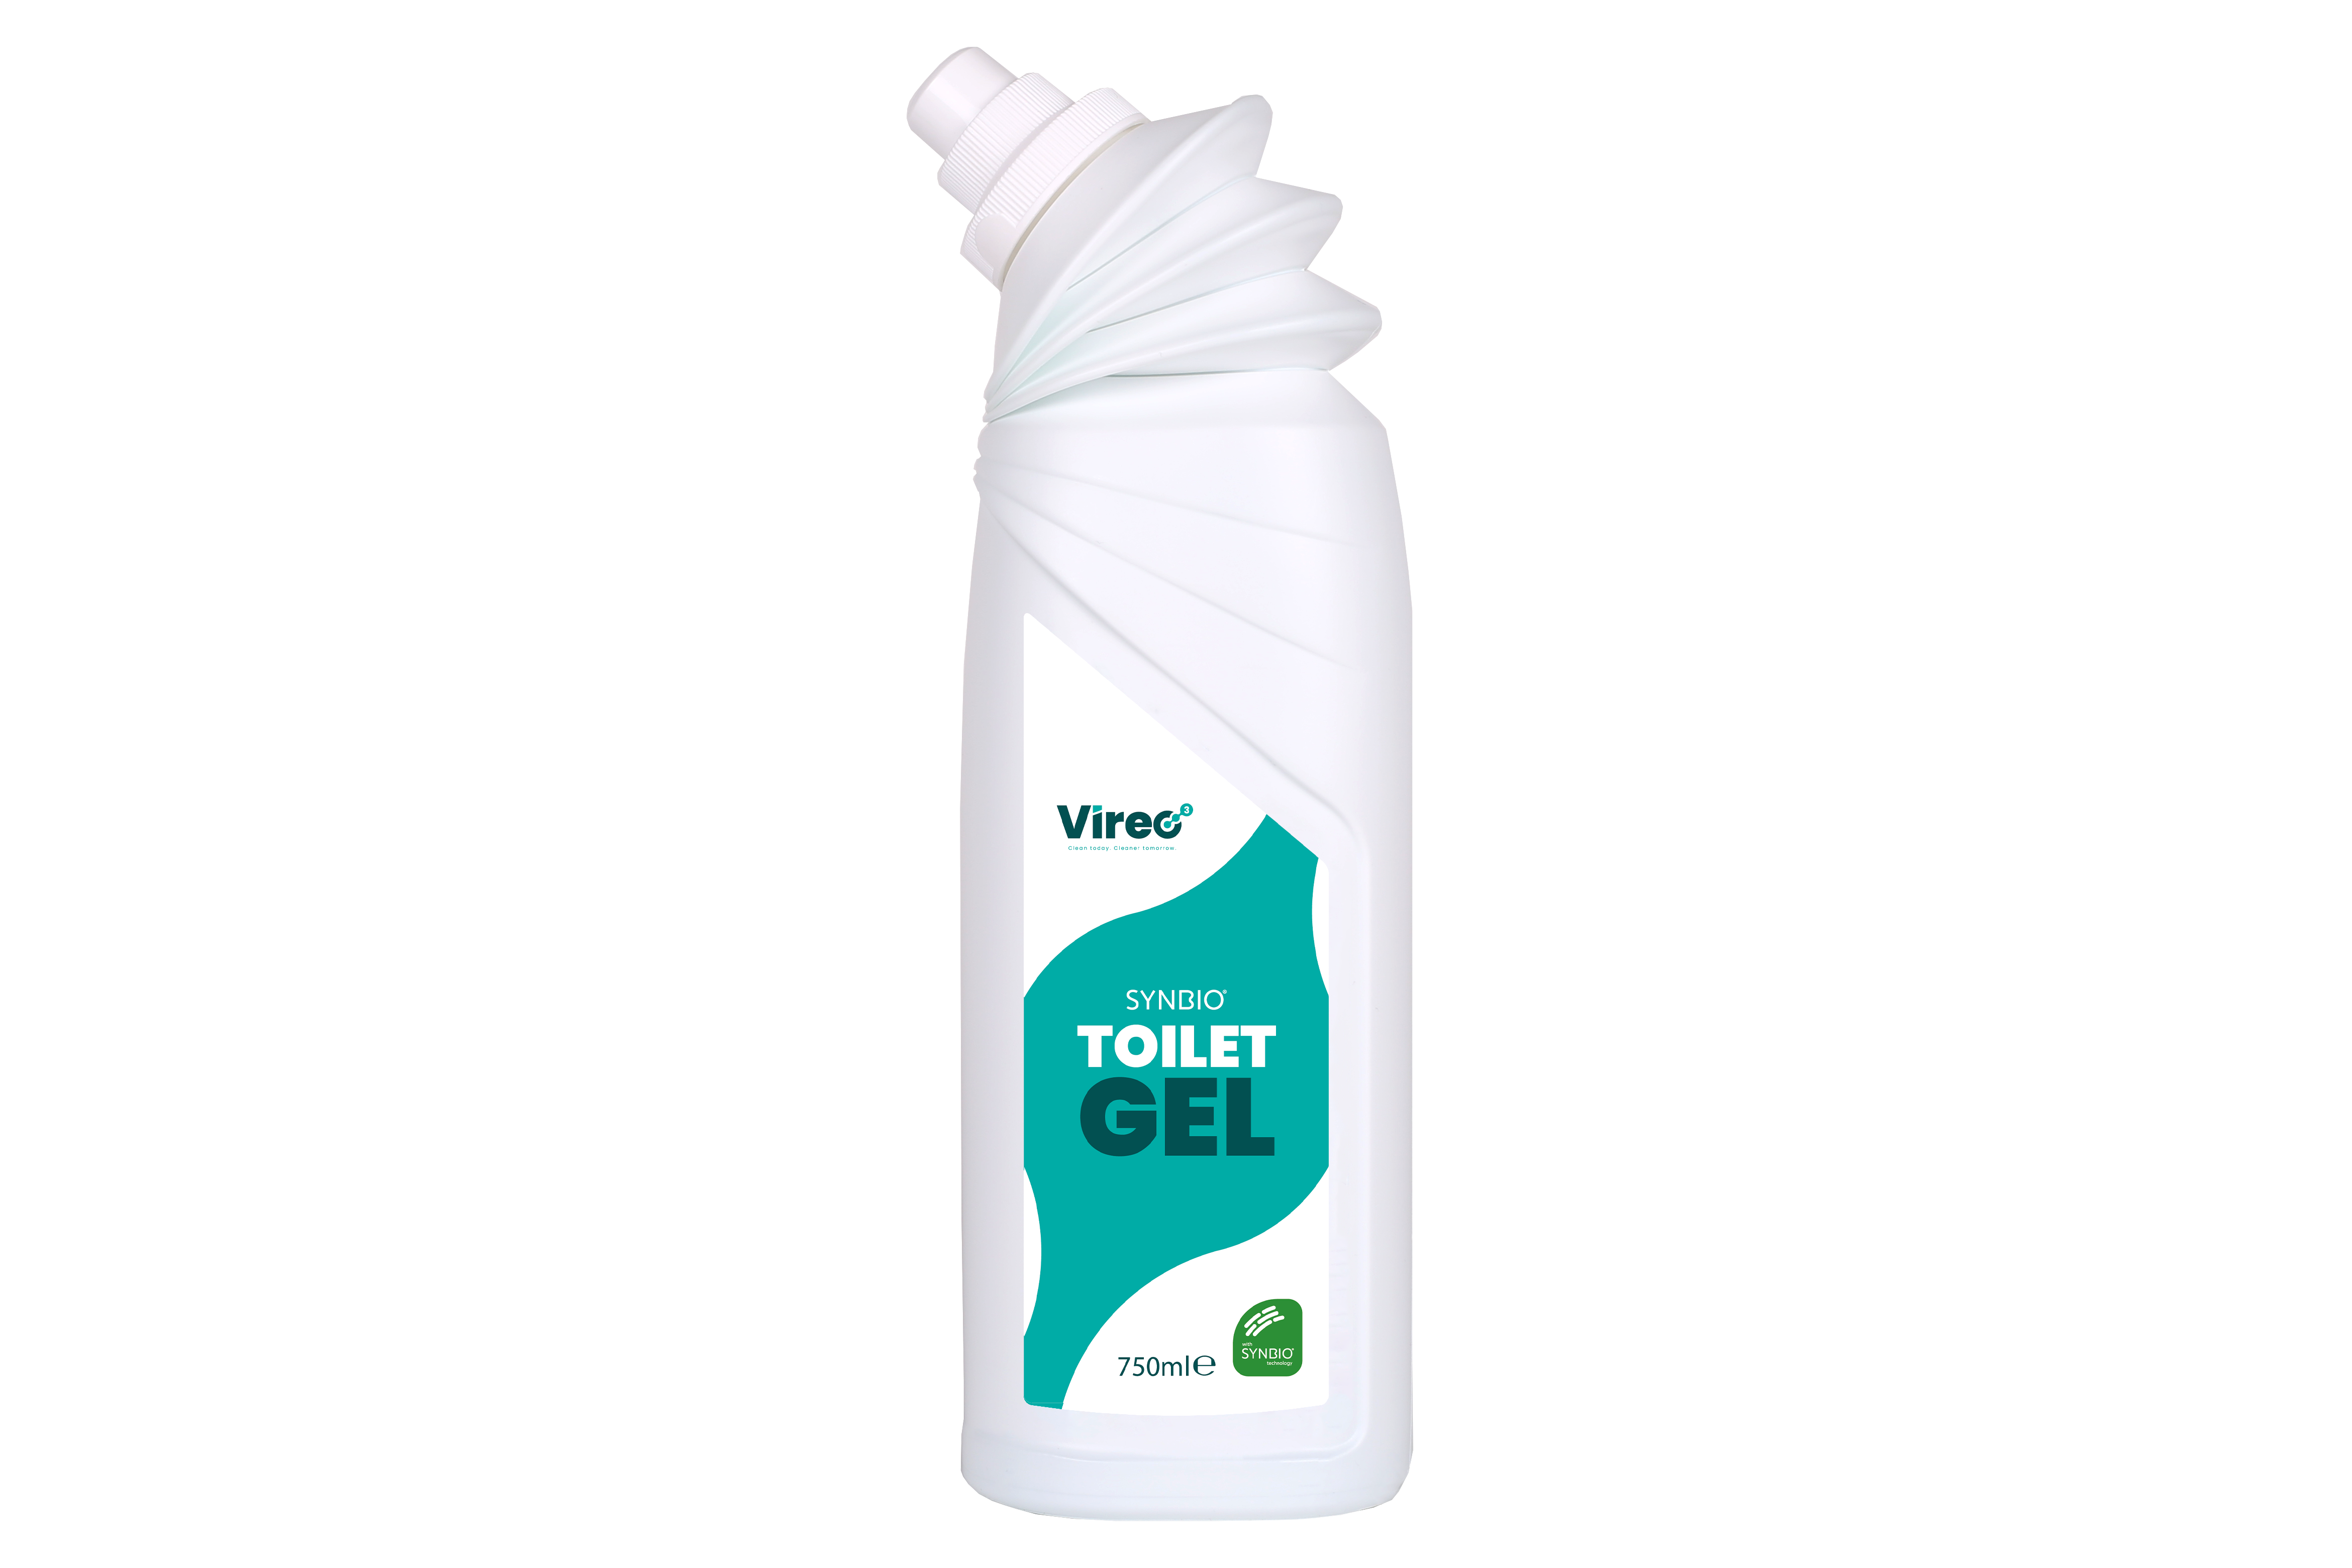 Vireo3 - Toilet Cleaner Gel - 750ml